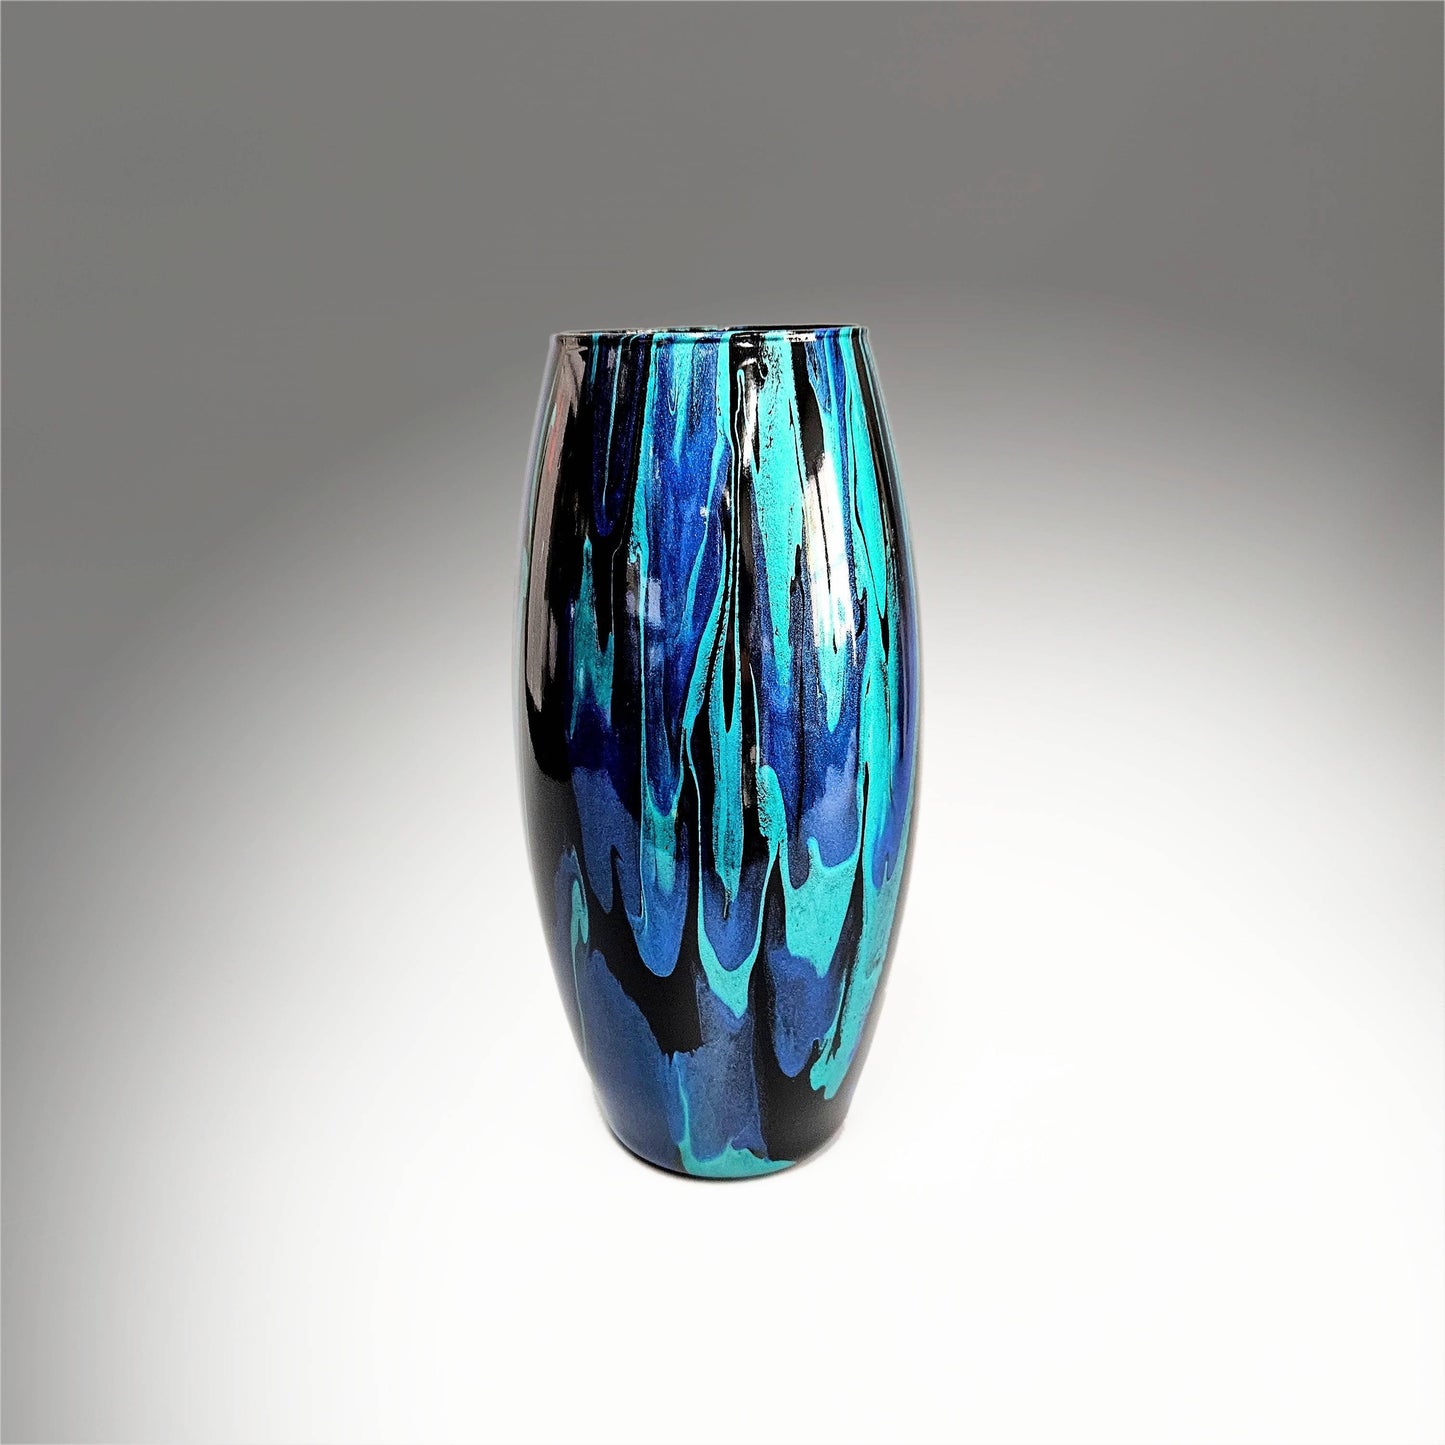 Abstract Teal Cobalt Black Glass Vase